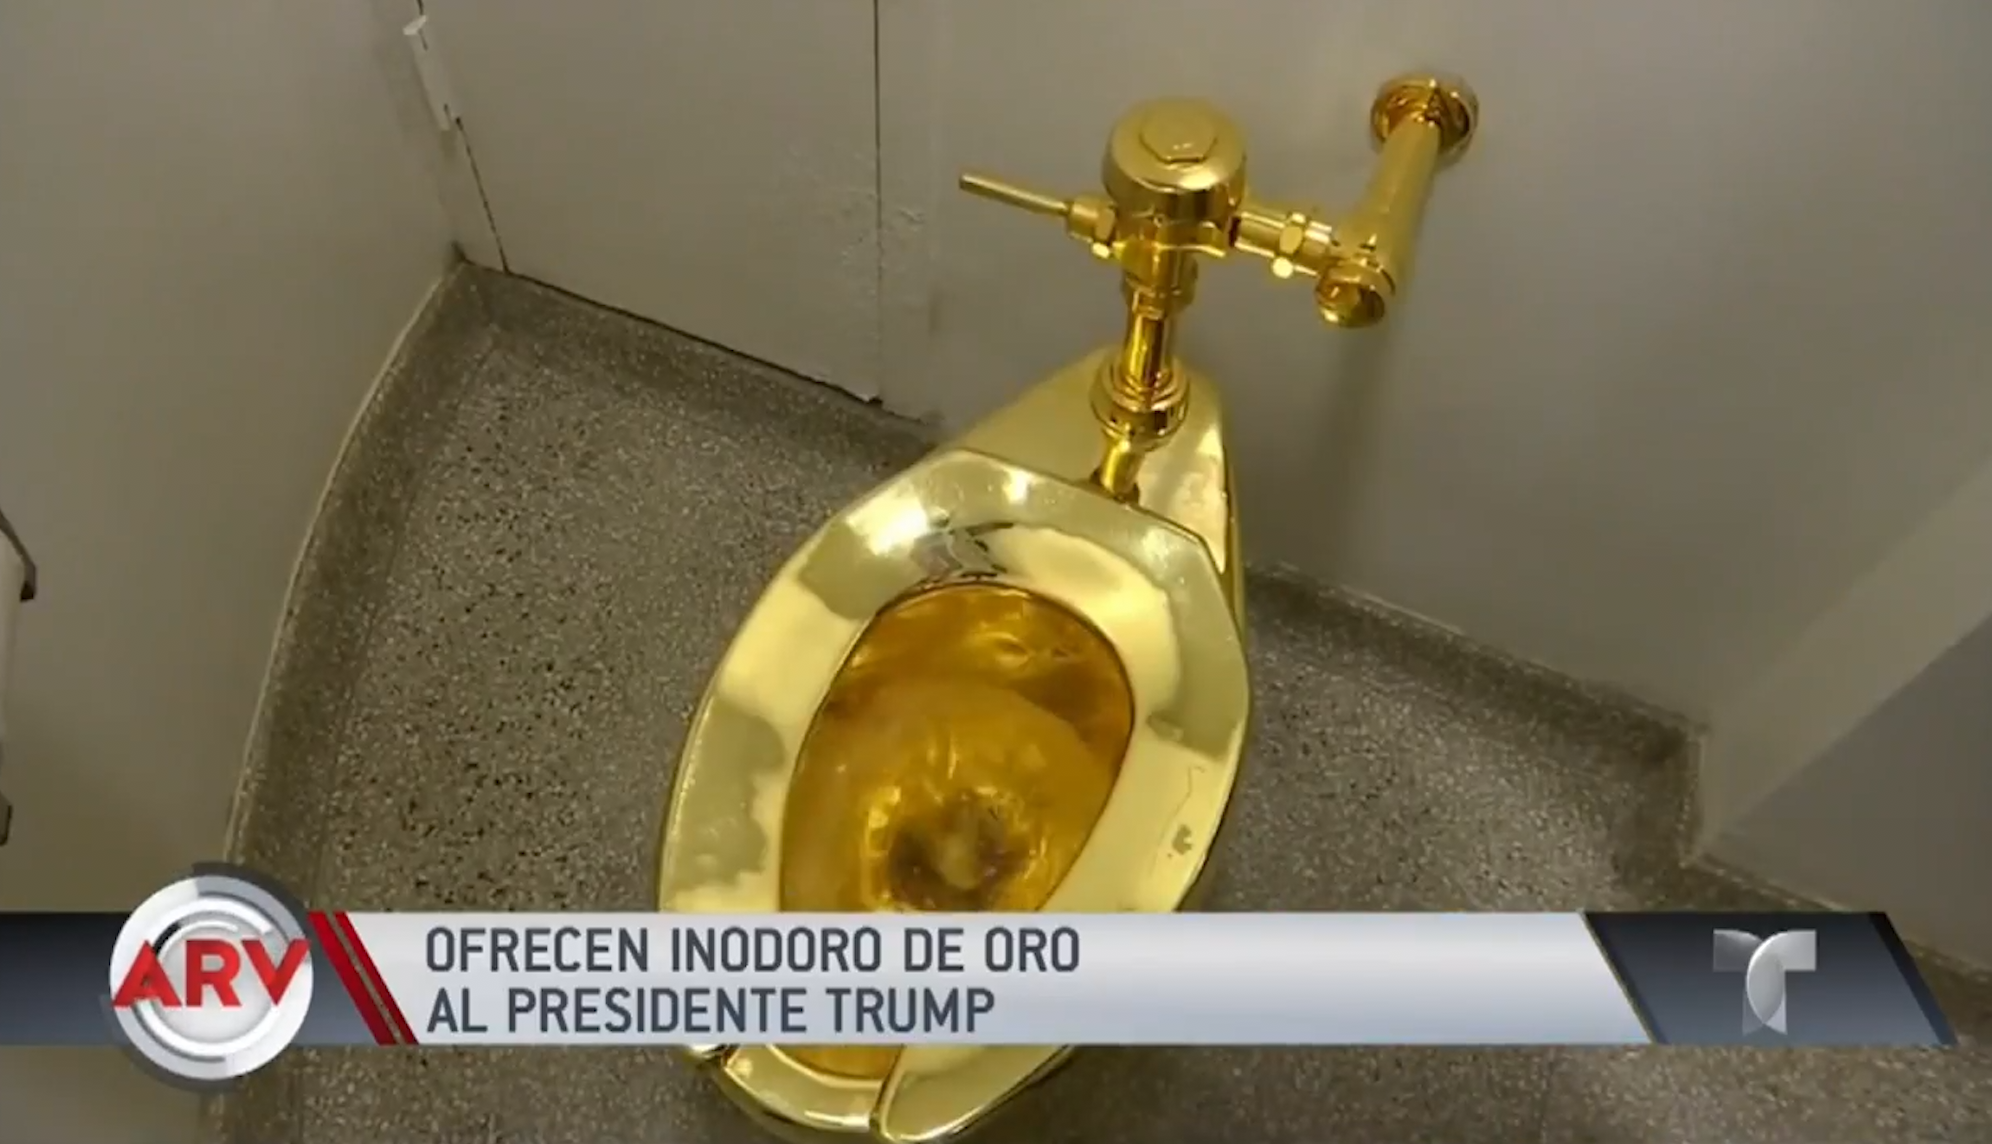 Donald Trump Pide Un Cuadro Para La Casa Blanca, Y Le Ofrecen Un Inodoro De Oro